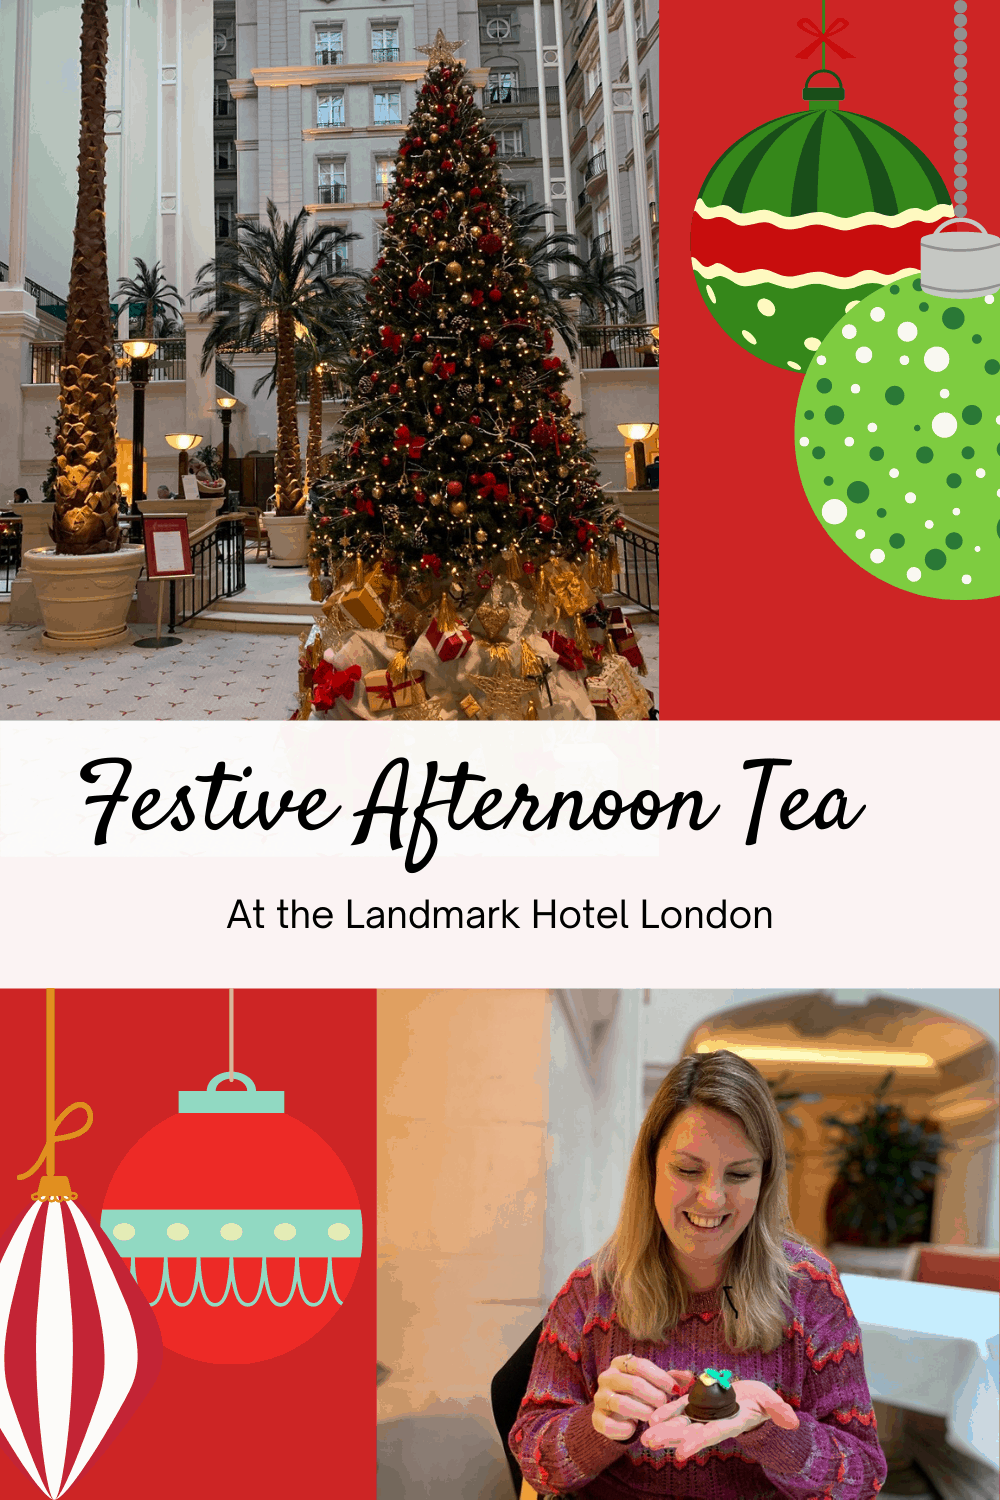 Festive Afternoon Tea at The Landmark London